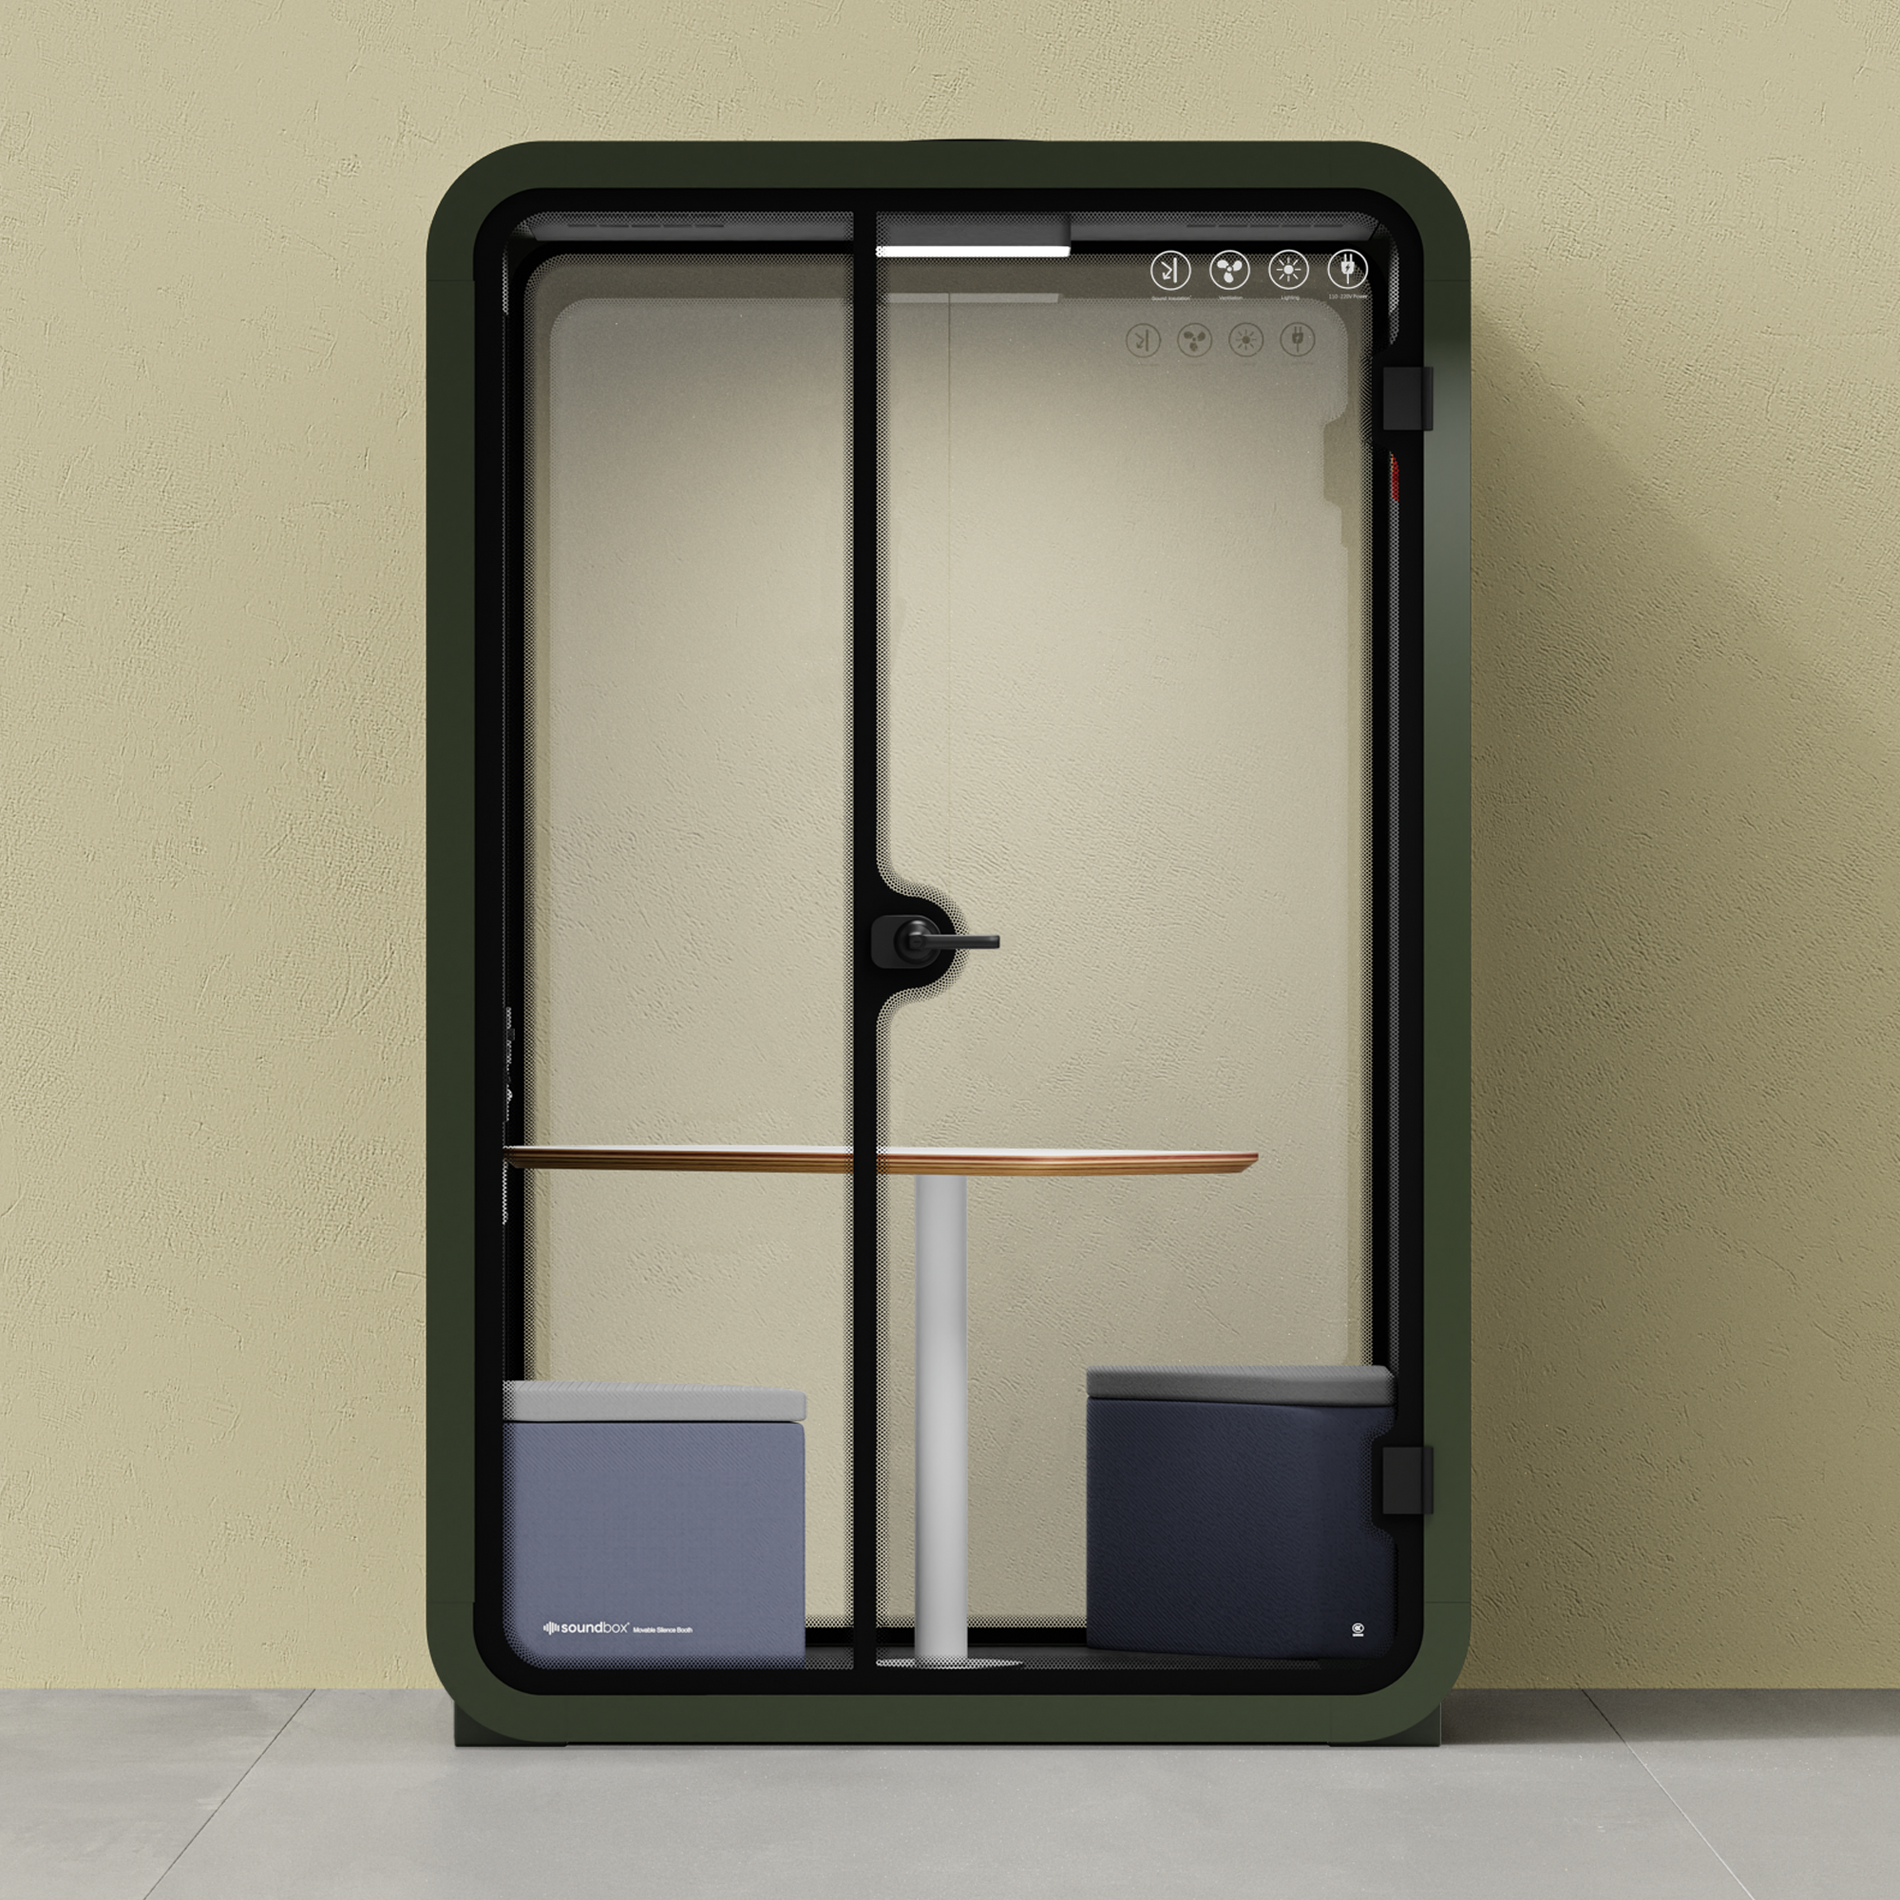 Quell - Büro-Pod - 2 PersonenGreen / Dark Gray / Meeting Room + Table + Corner Stool